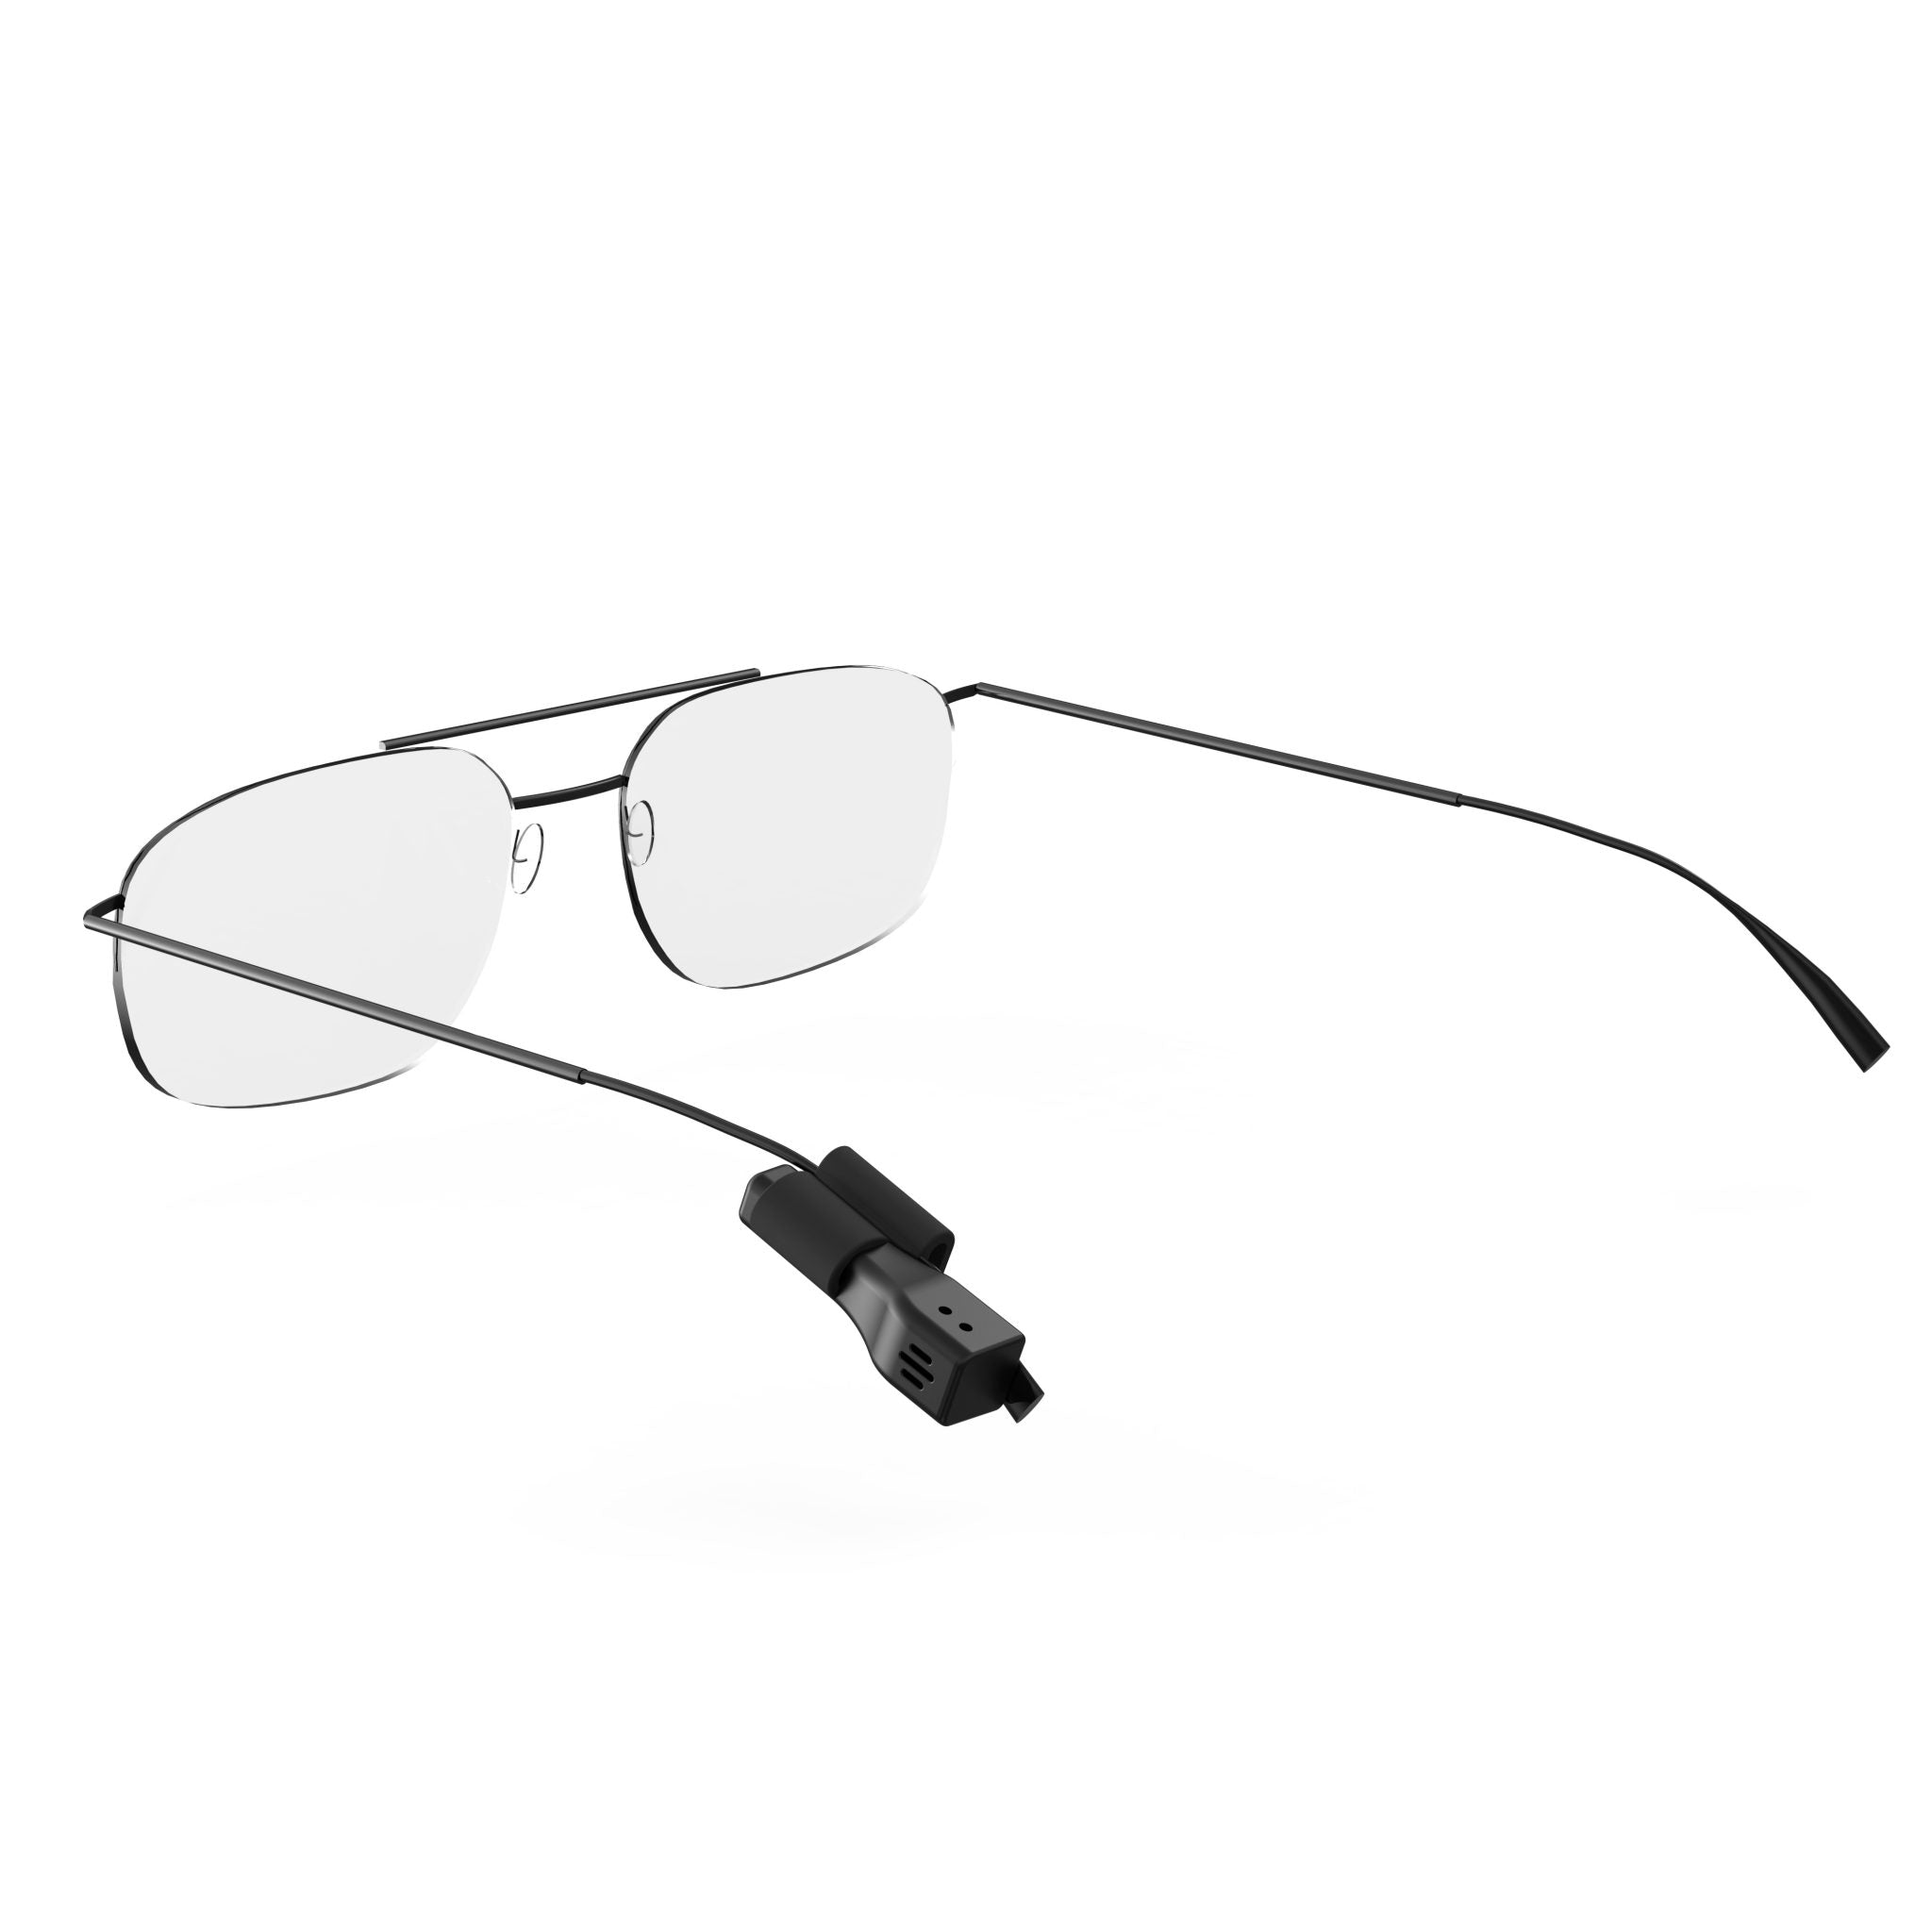 MUSEGEAR Brillenfinder Schlüsselfinder Bluetooth